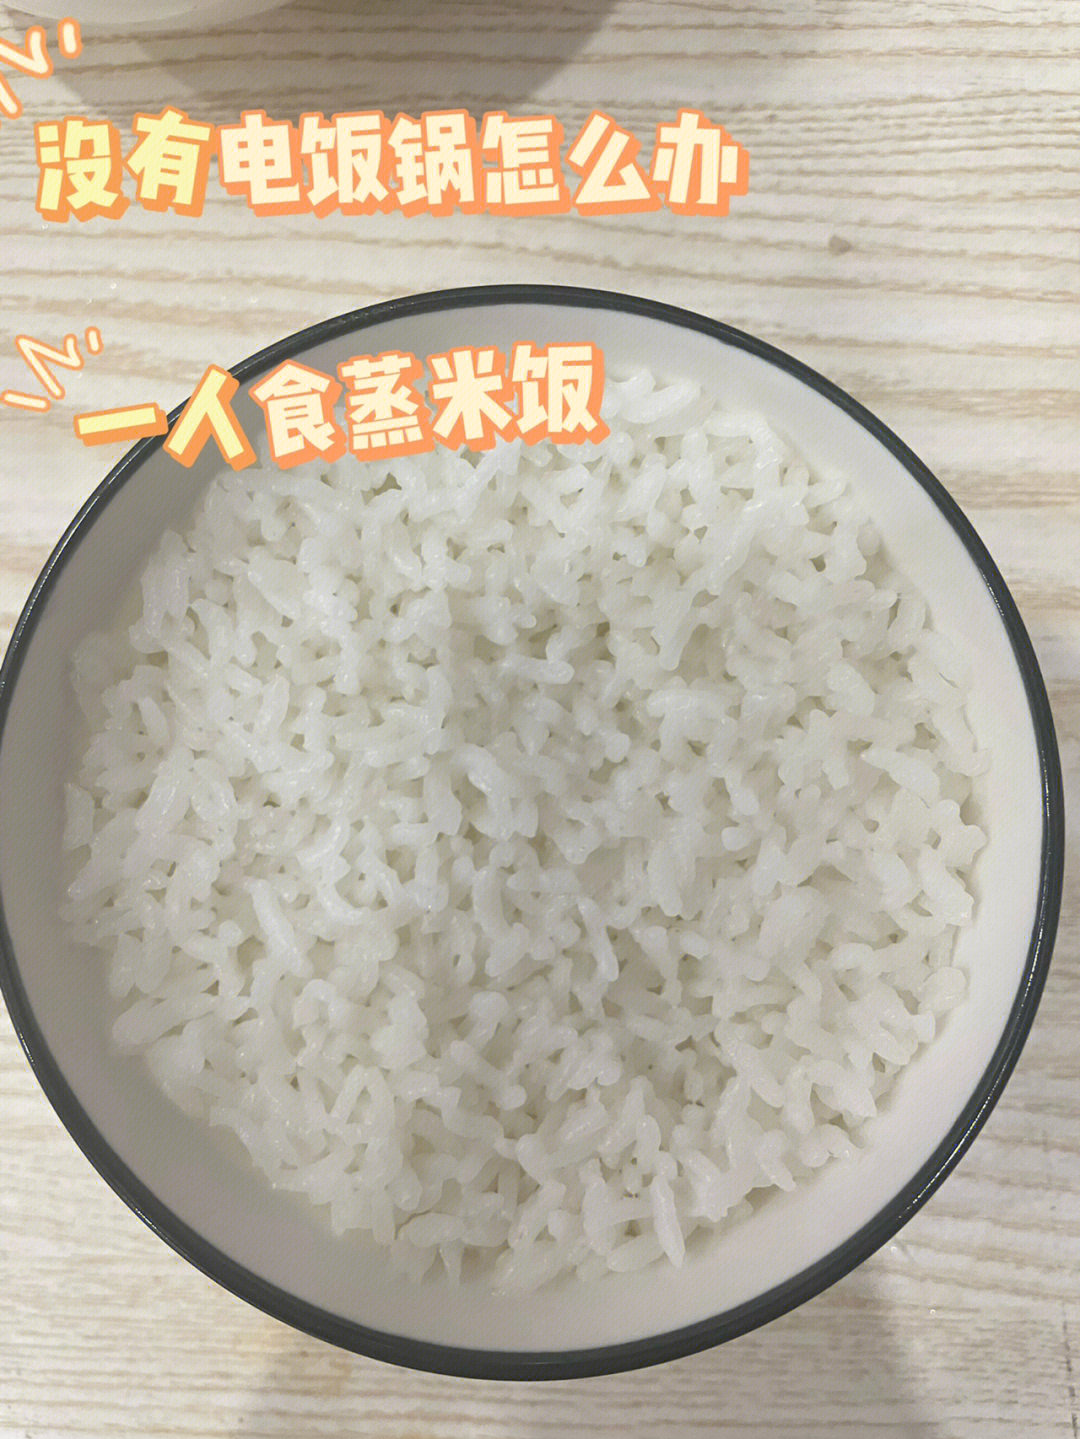 一碗米饭大概放三分之一碗米再加水加碗的三分之二处